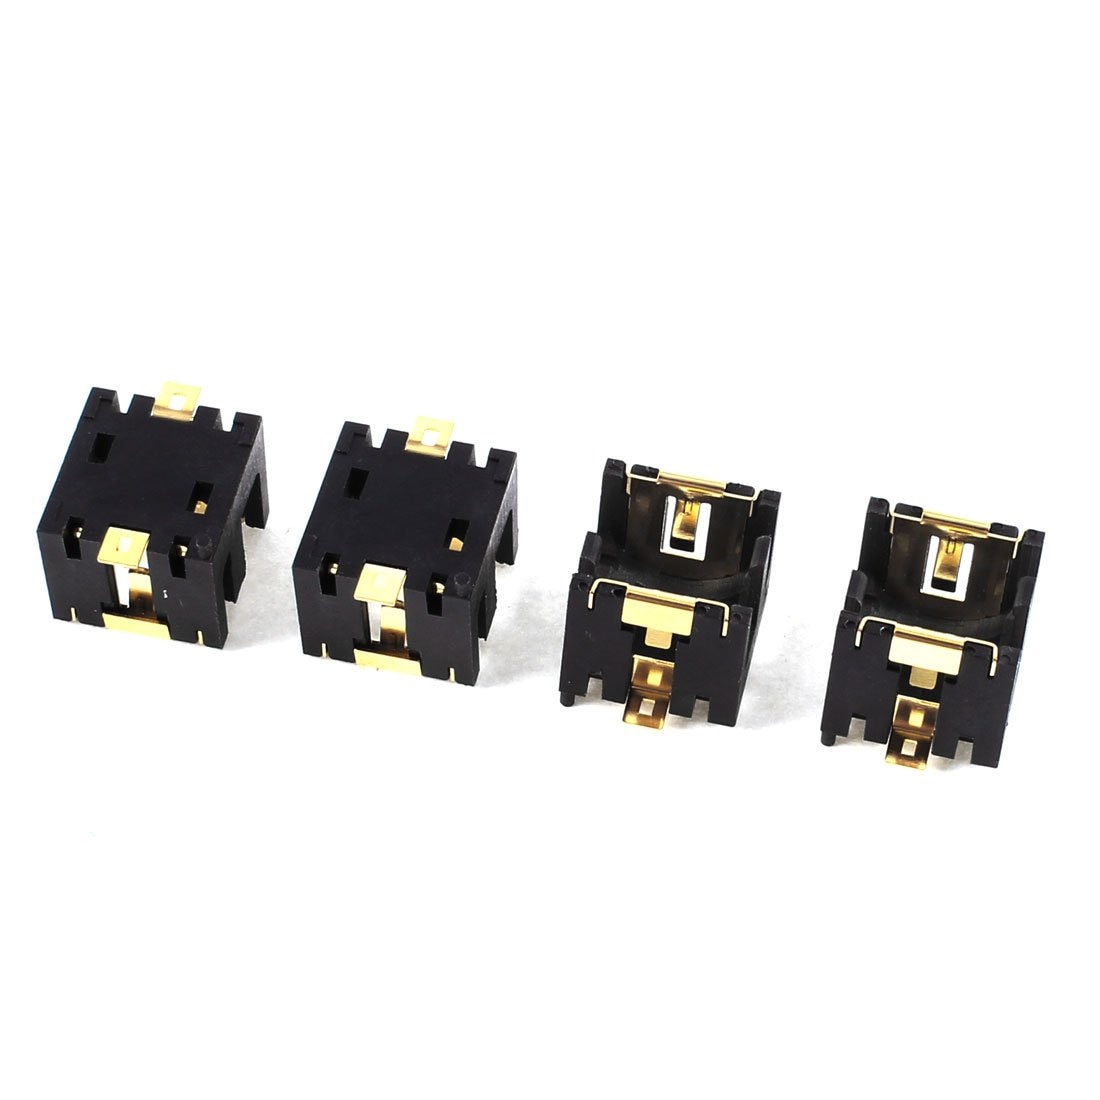 4 stuks Zwart Plastic Button Knoopcelbatterij Socket Houder voor 2 x AG13/LR44